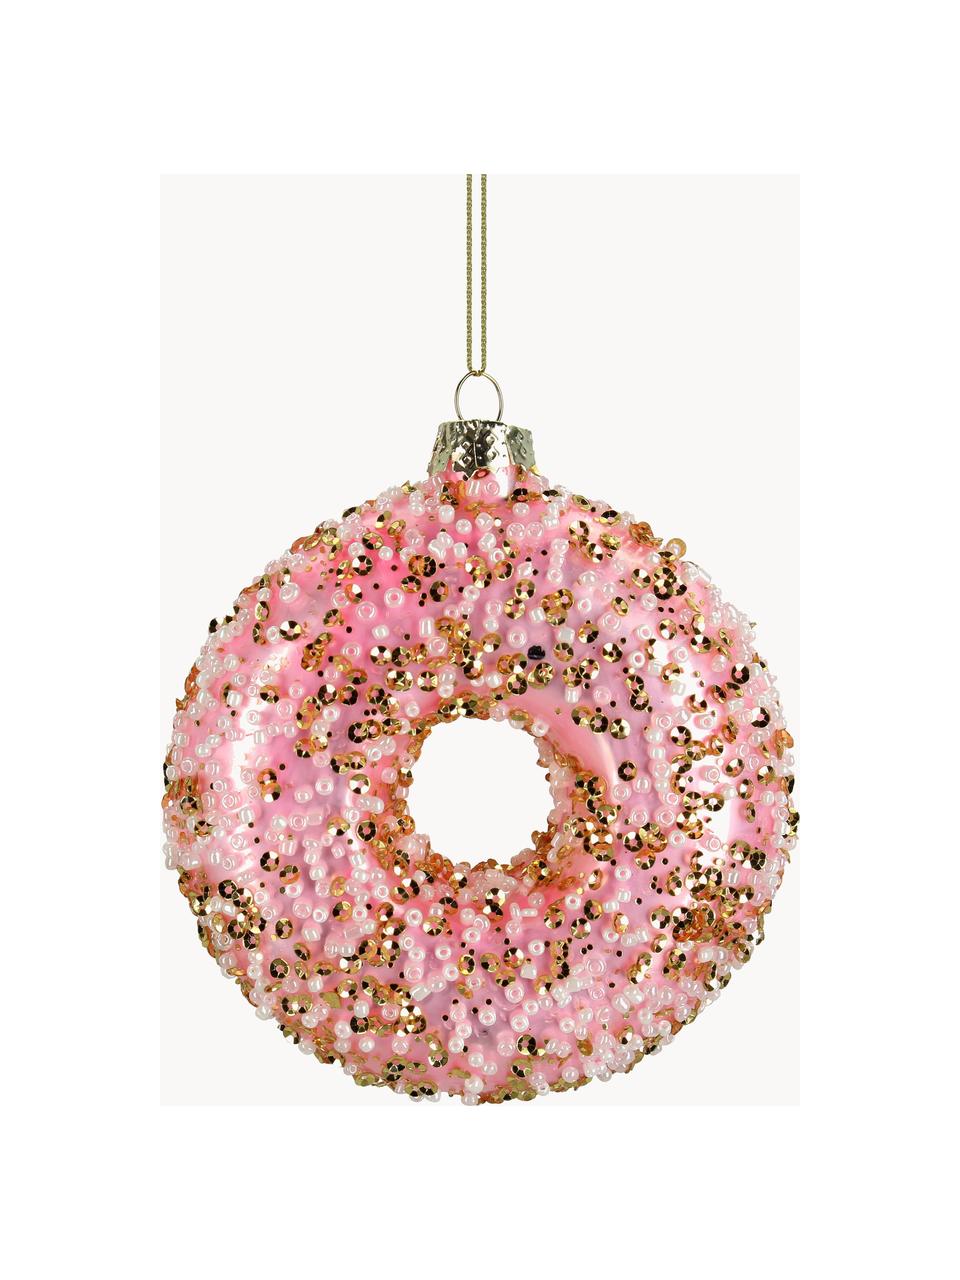 Kerstboomhanger Glaze in de vorm van donut, Glas, Roze, goudkleurig, Ø 9 cm